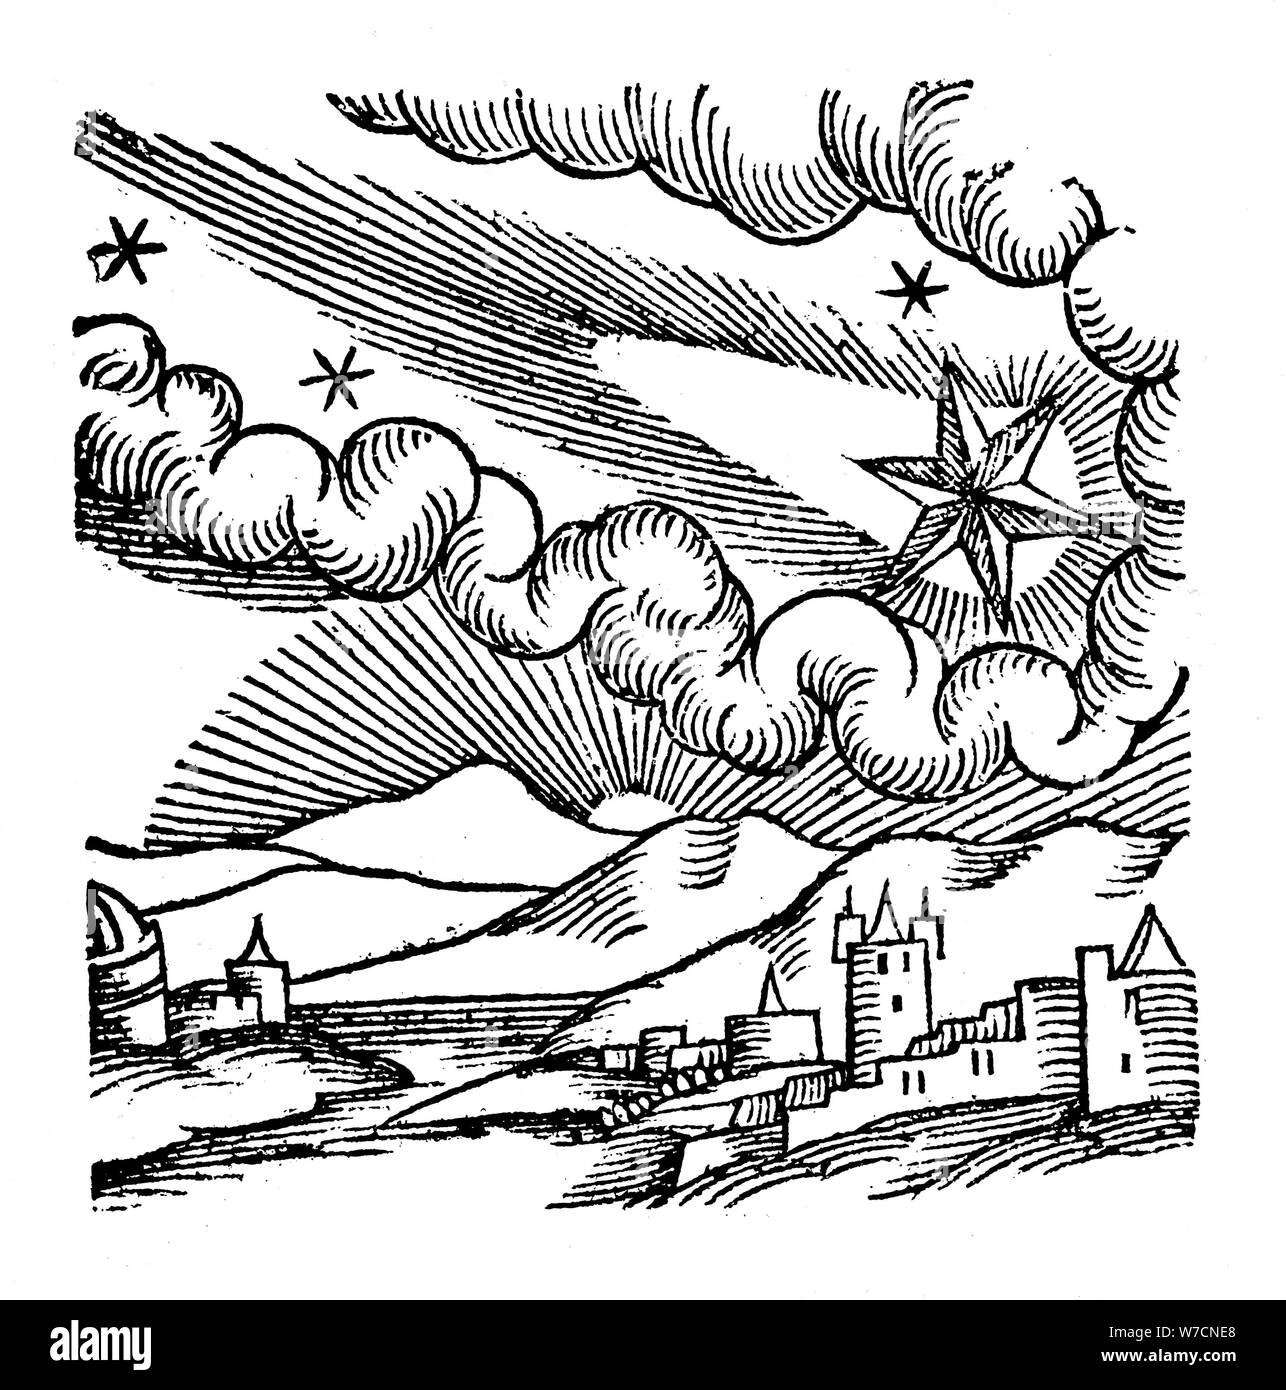 Del cometa Halley (1456), 1557. Artista: Desconocido Foto de stock